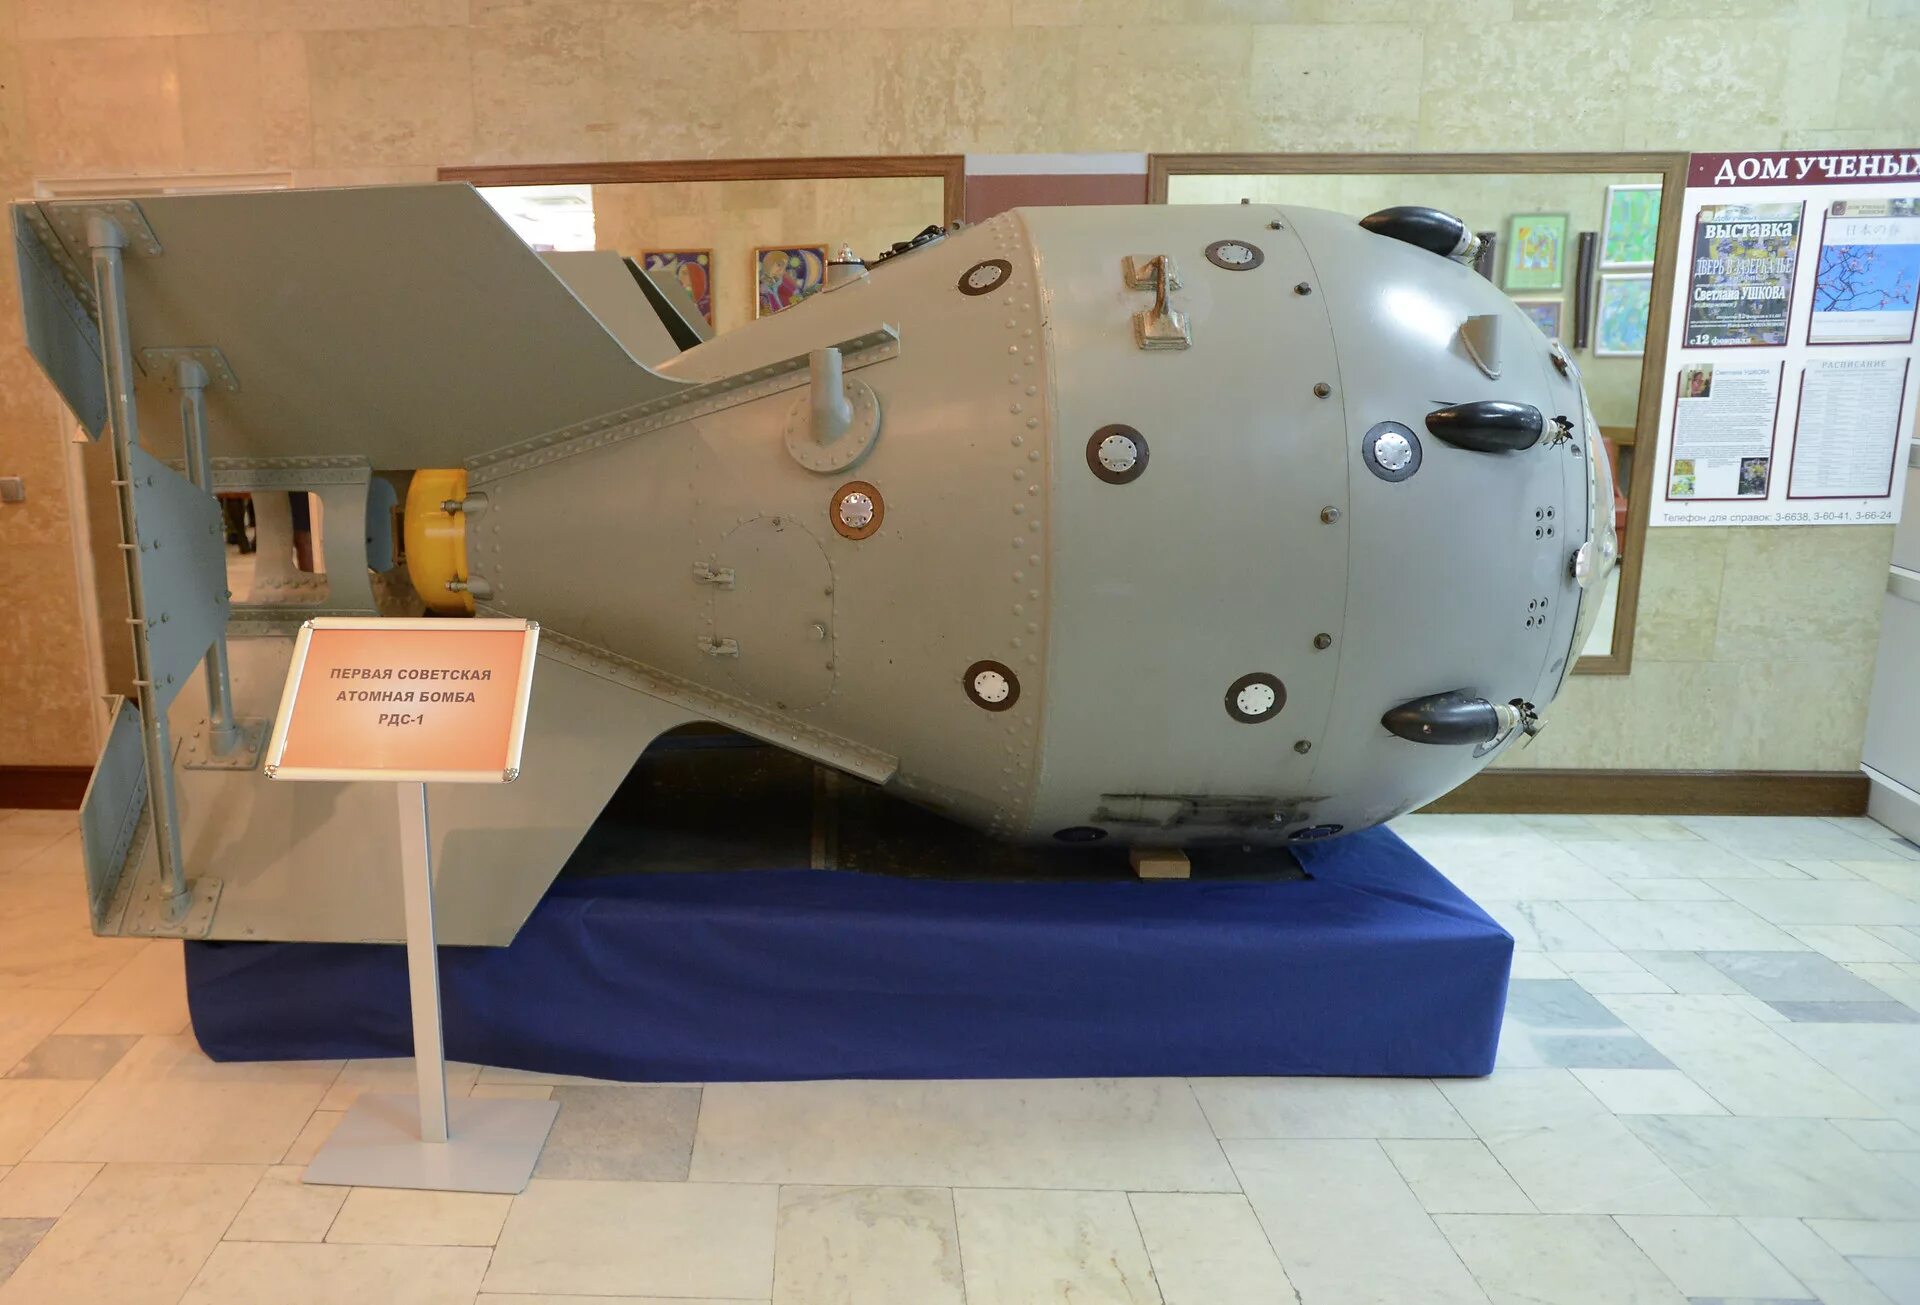 Атомная бомба РДС-1. Советской атомной бомбы РДС-1. Ядерная бомба СССР РДС 1. РДС-6с первая Советская водородная бомба. Первая атомная бомба дата